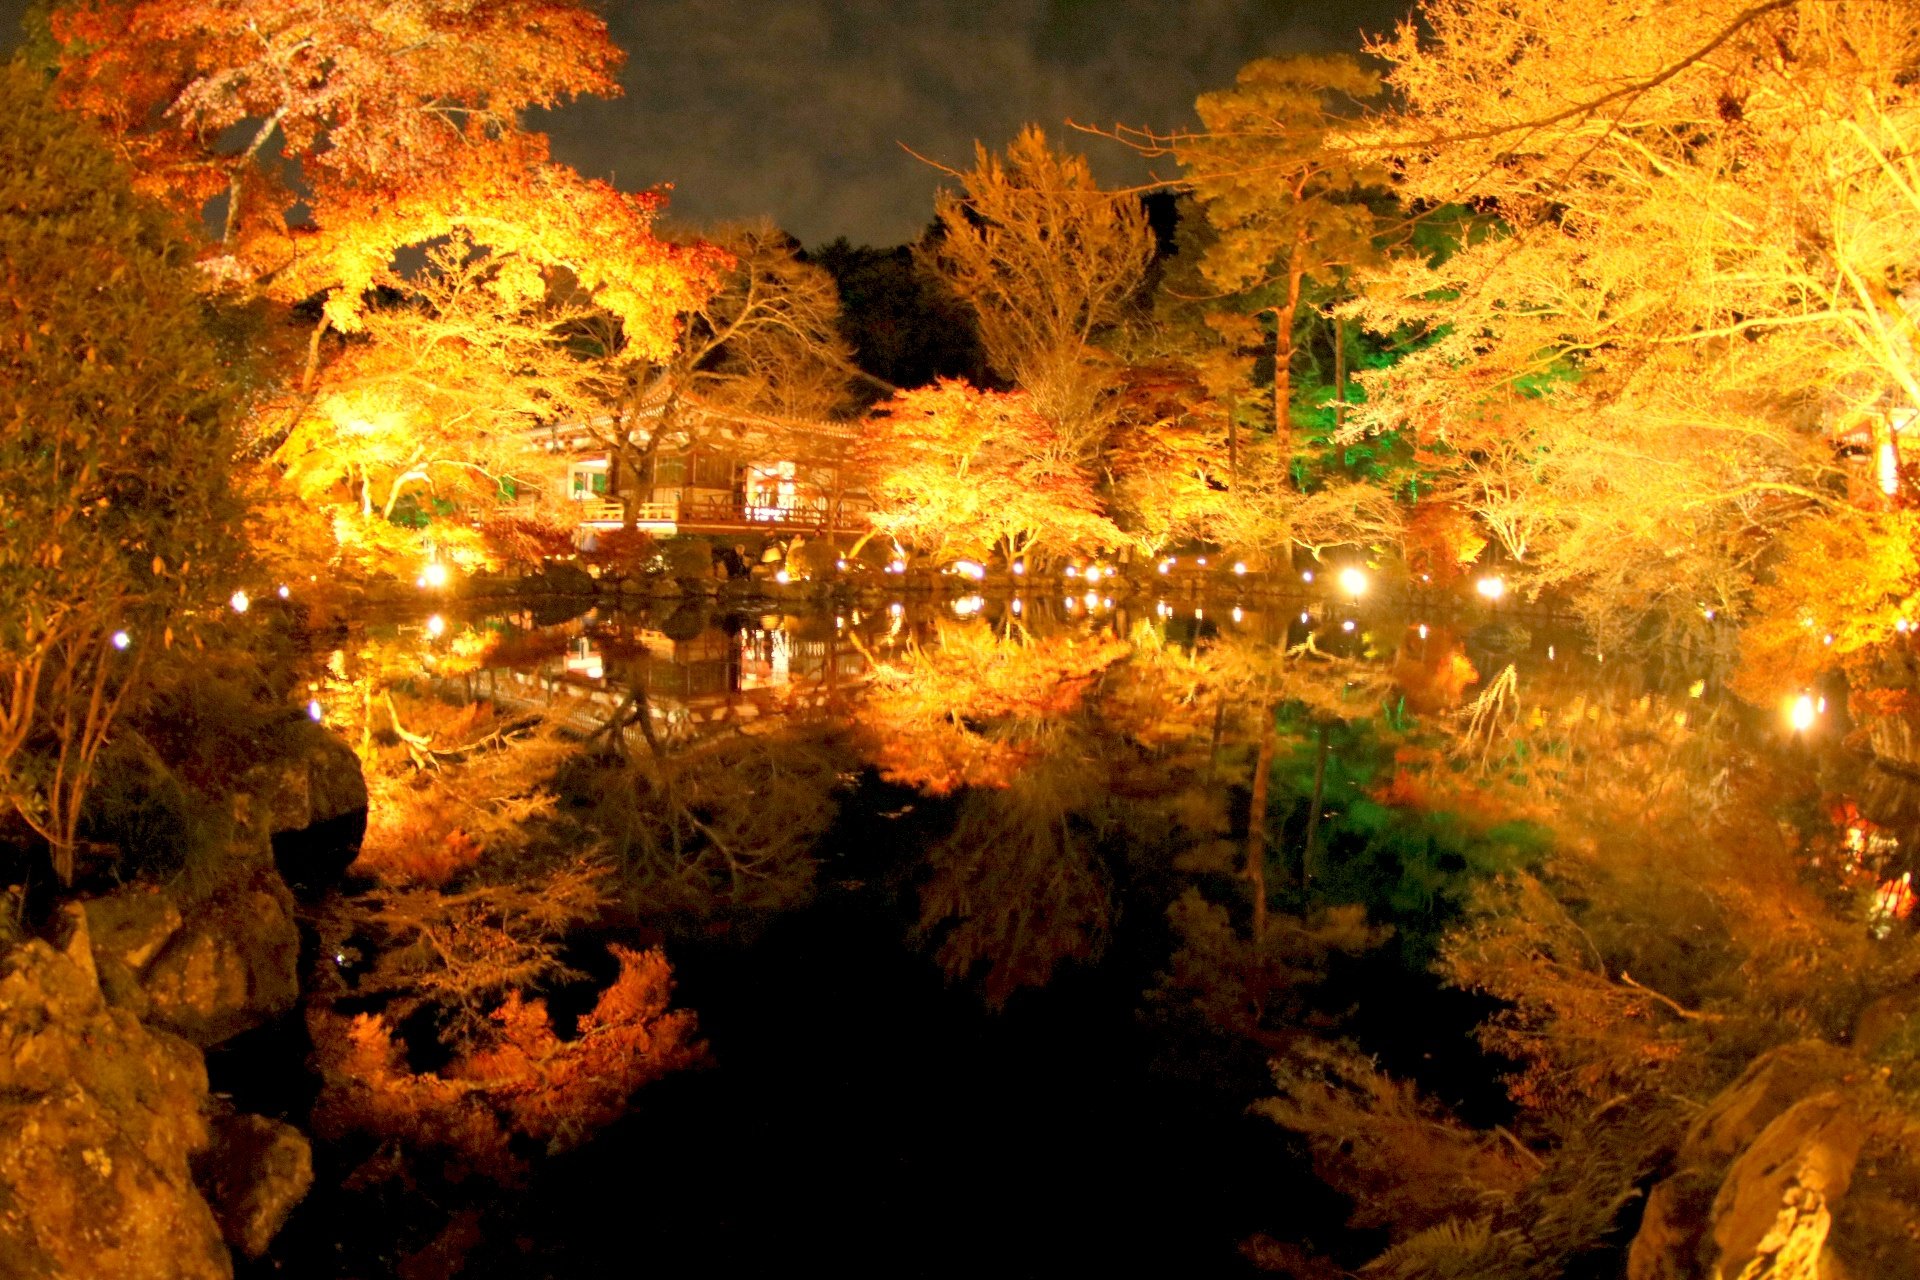 Japanese garden at entsu-in temple in Matsushima, Japan in autumn